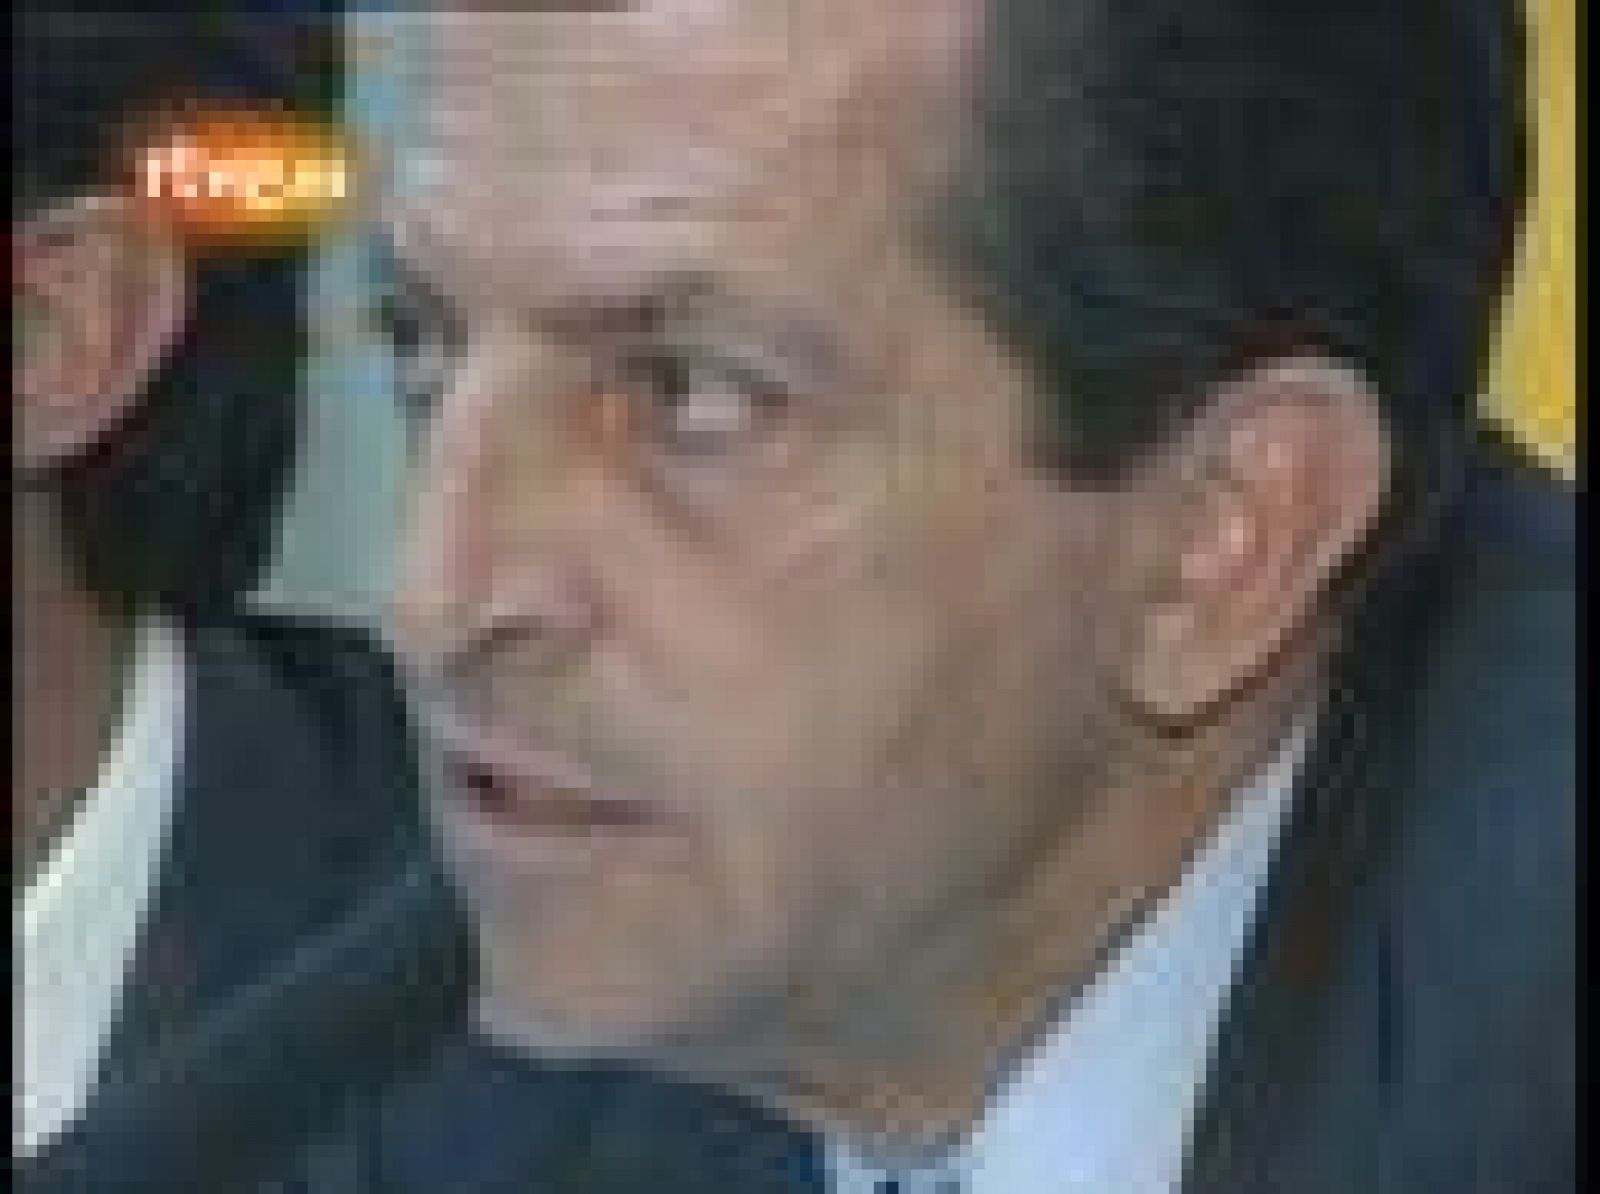 Dimisión de Adolfo Suárez como presidente del CDS (1991)